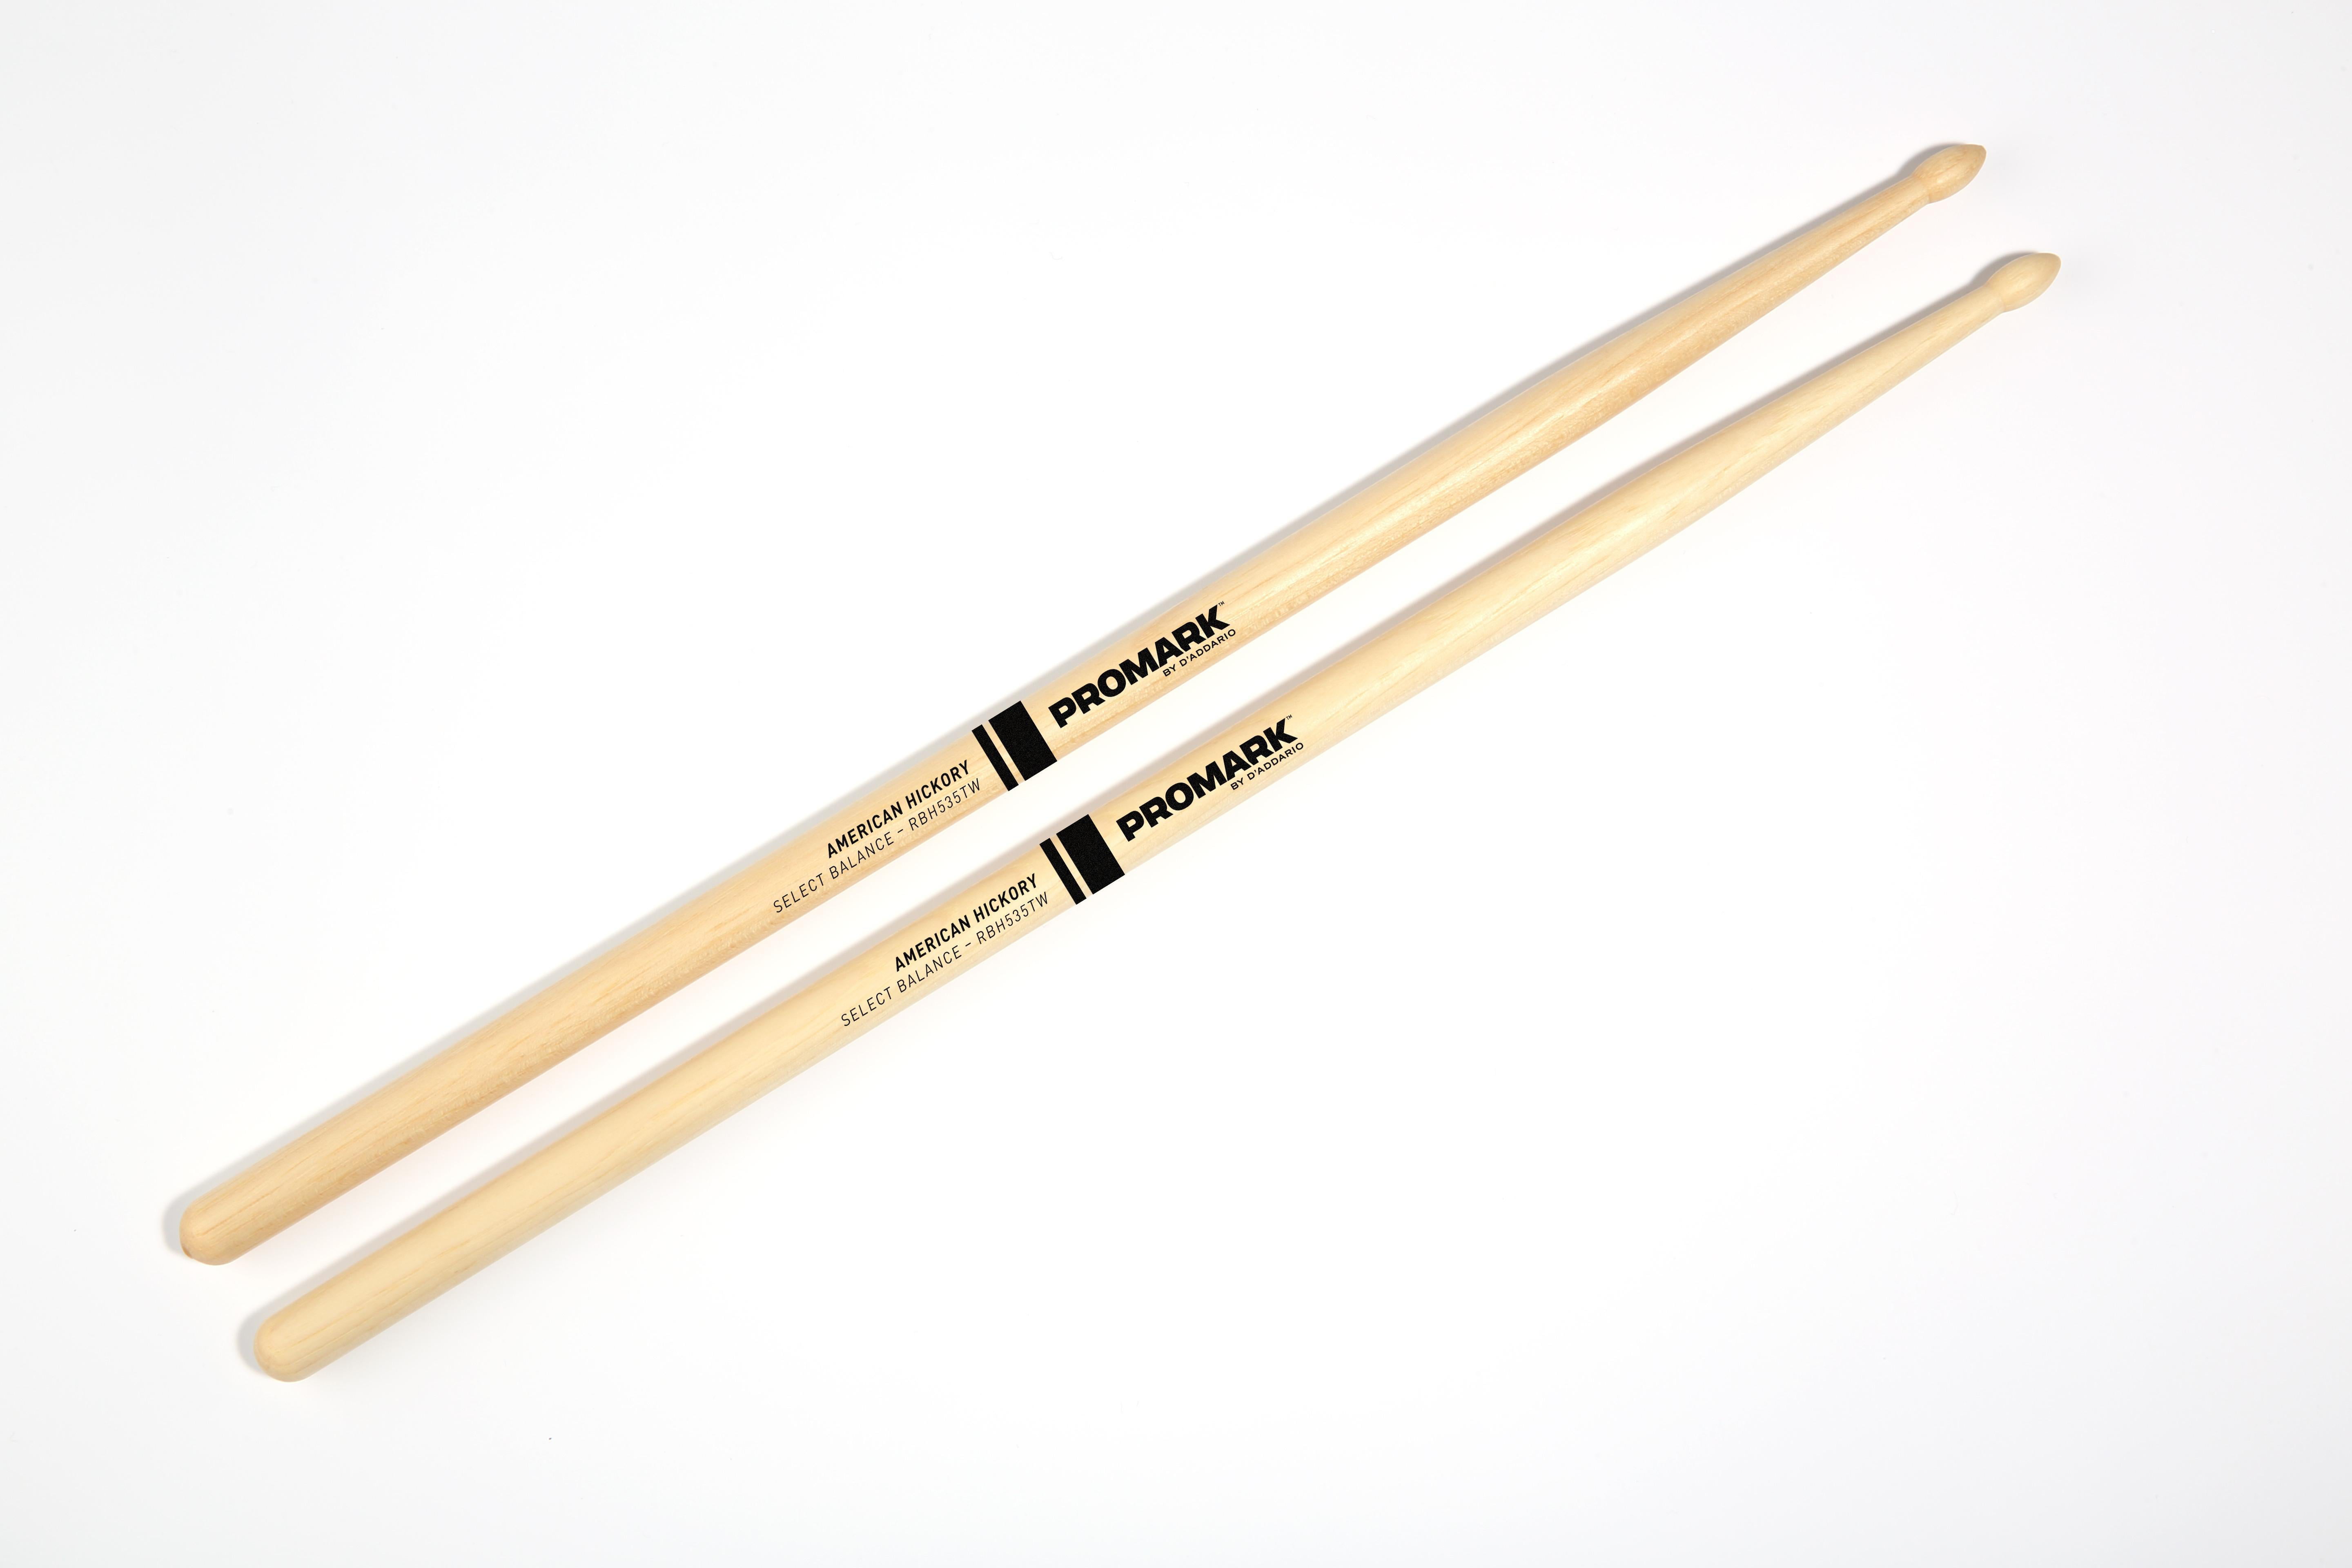 Pro Mark American Hickory 5AL Wood Tip Drumsticks